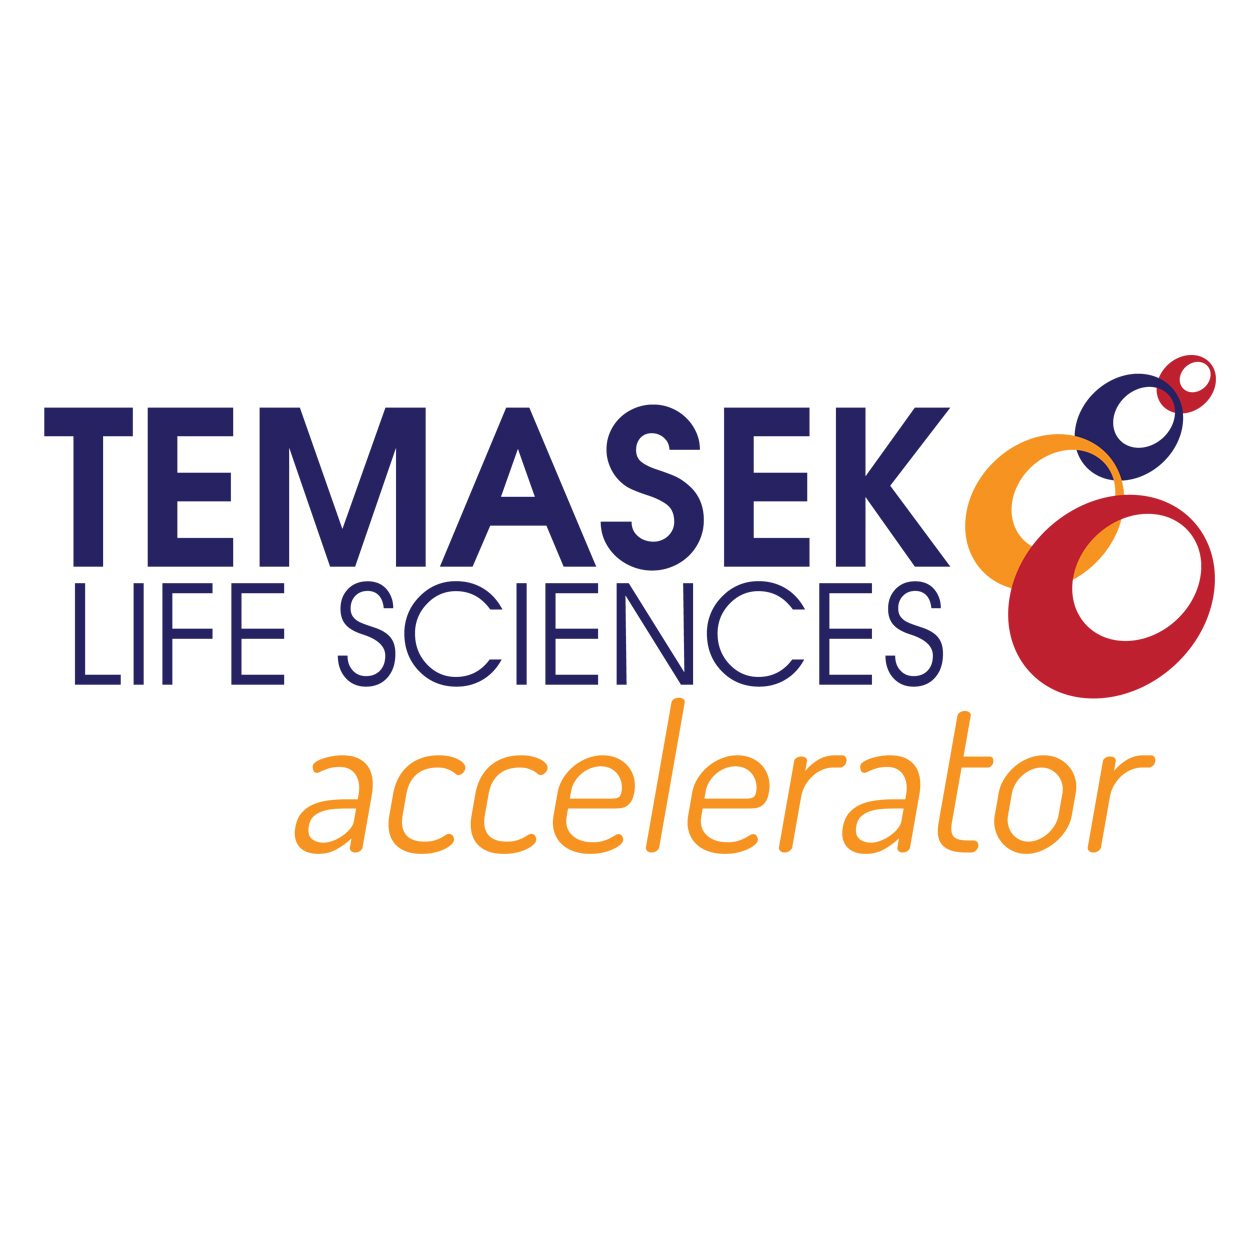 Temasek Life Sciences accelerator